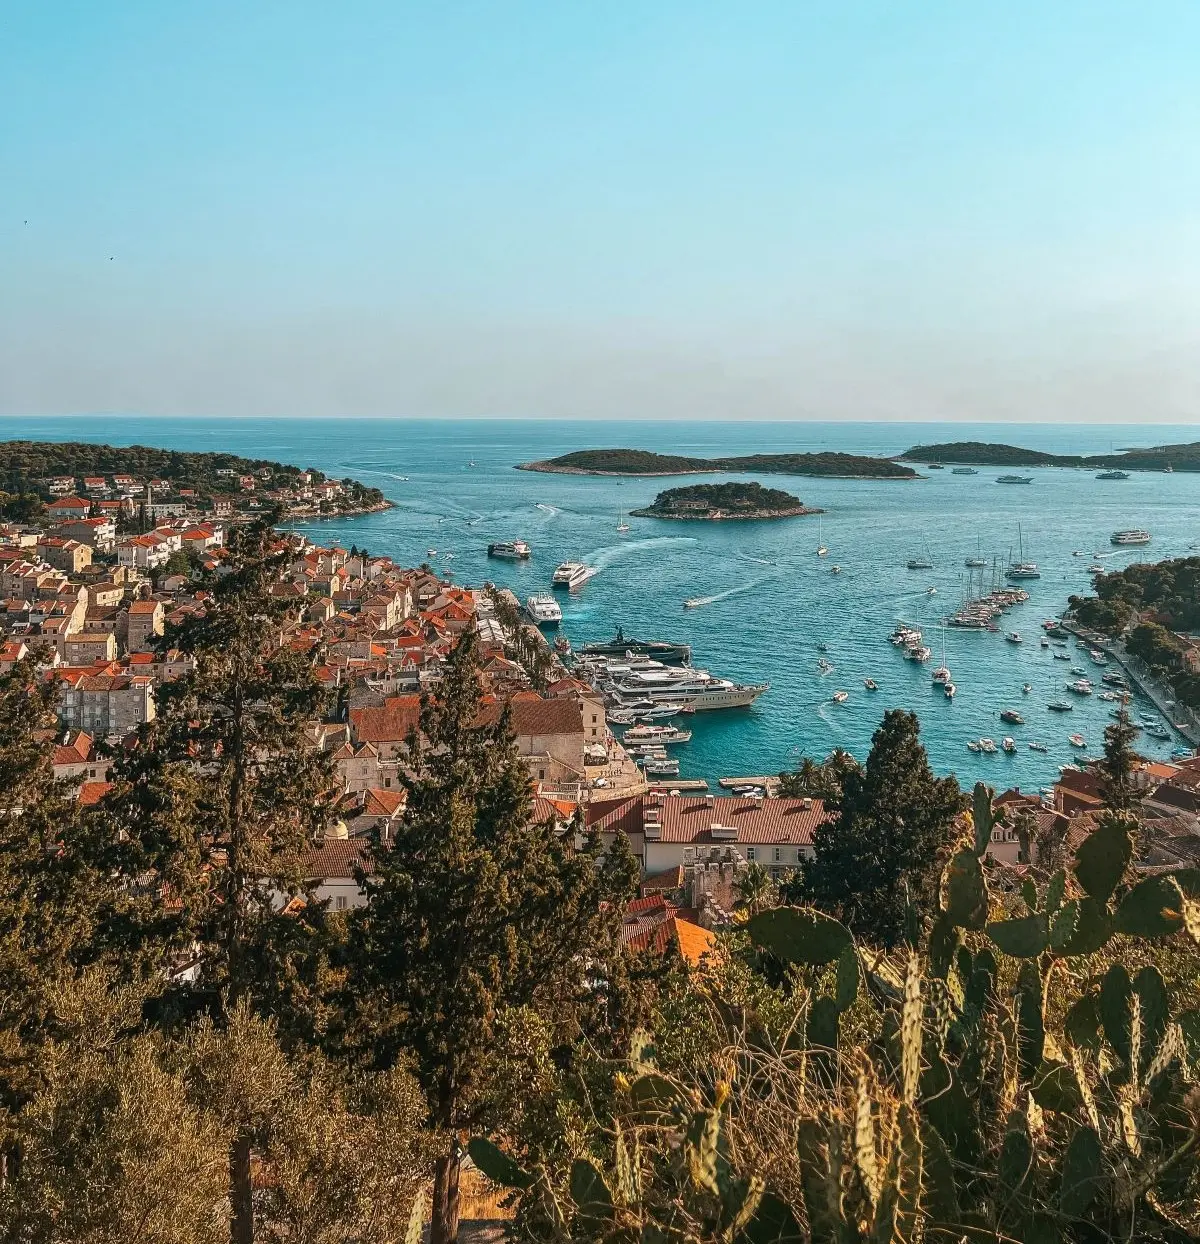 The view of Hvar town on Hvar island, Croatia